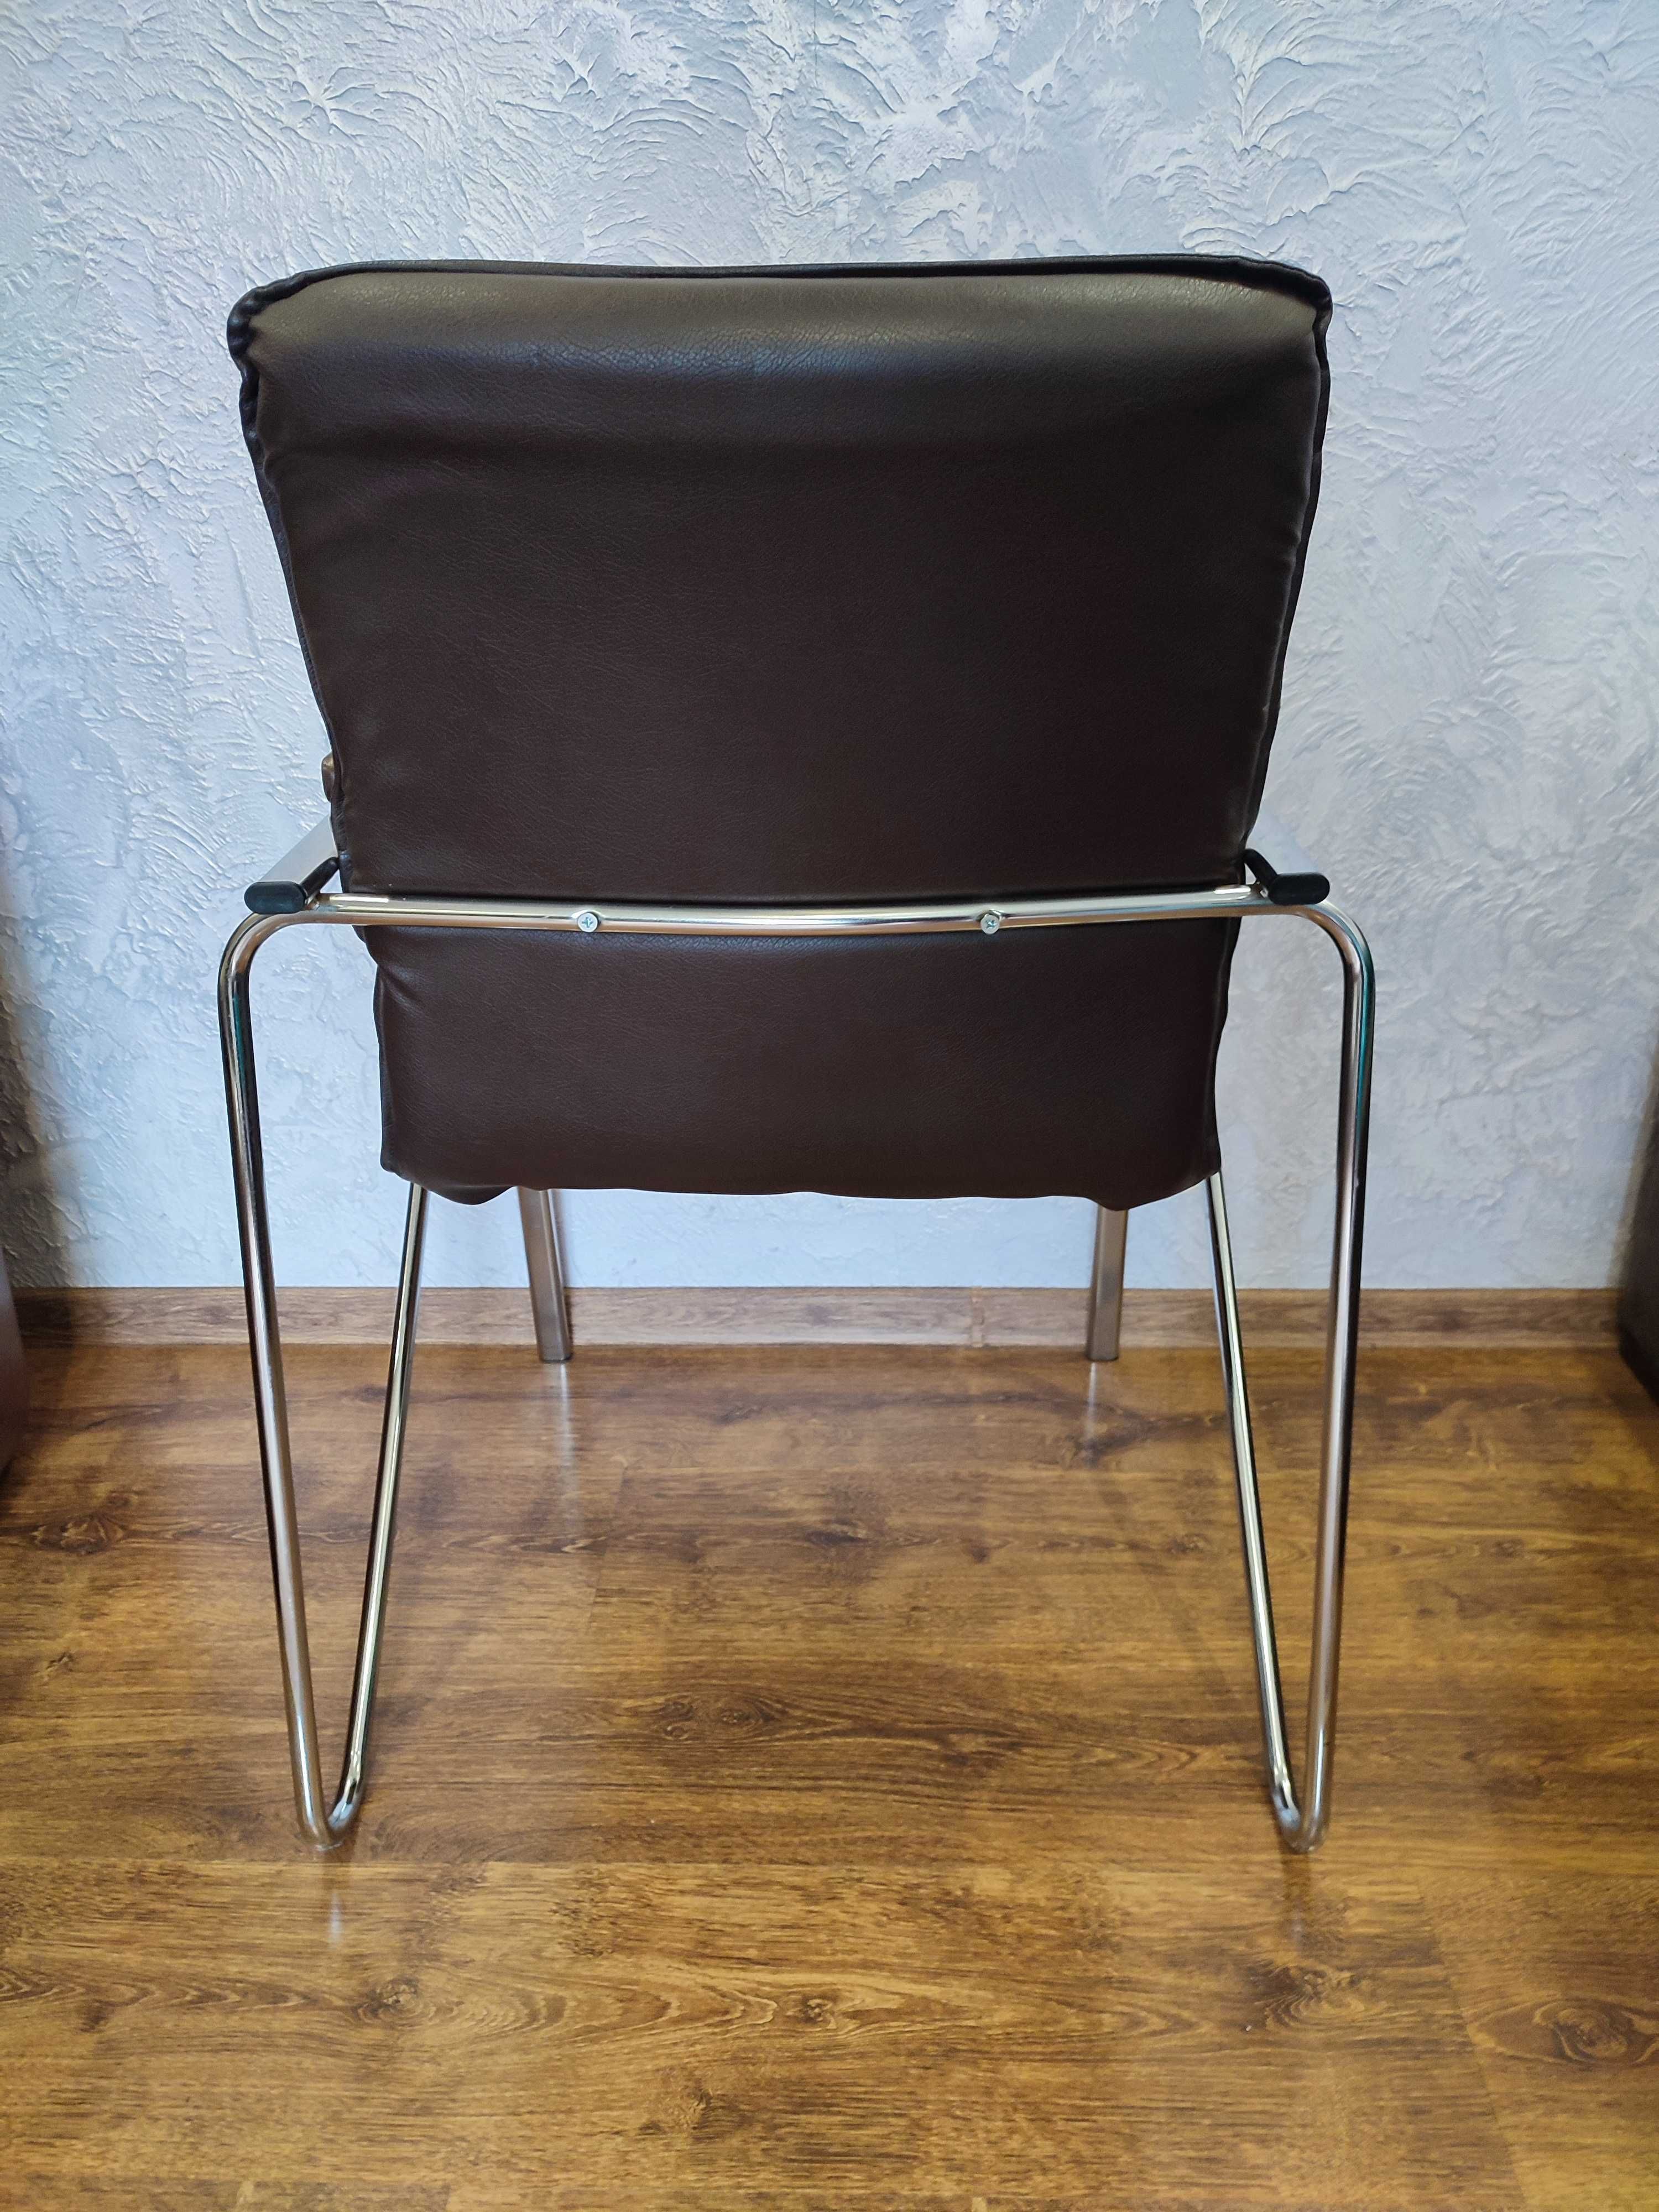 Комфортные стулья - кресла (офис/дом)